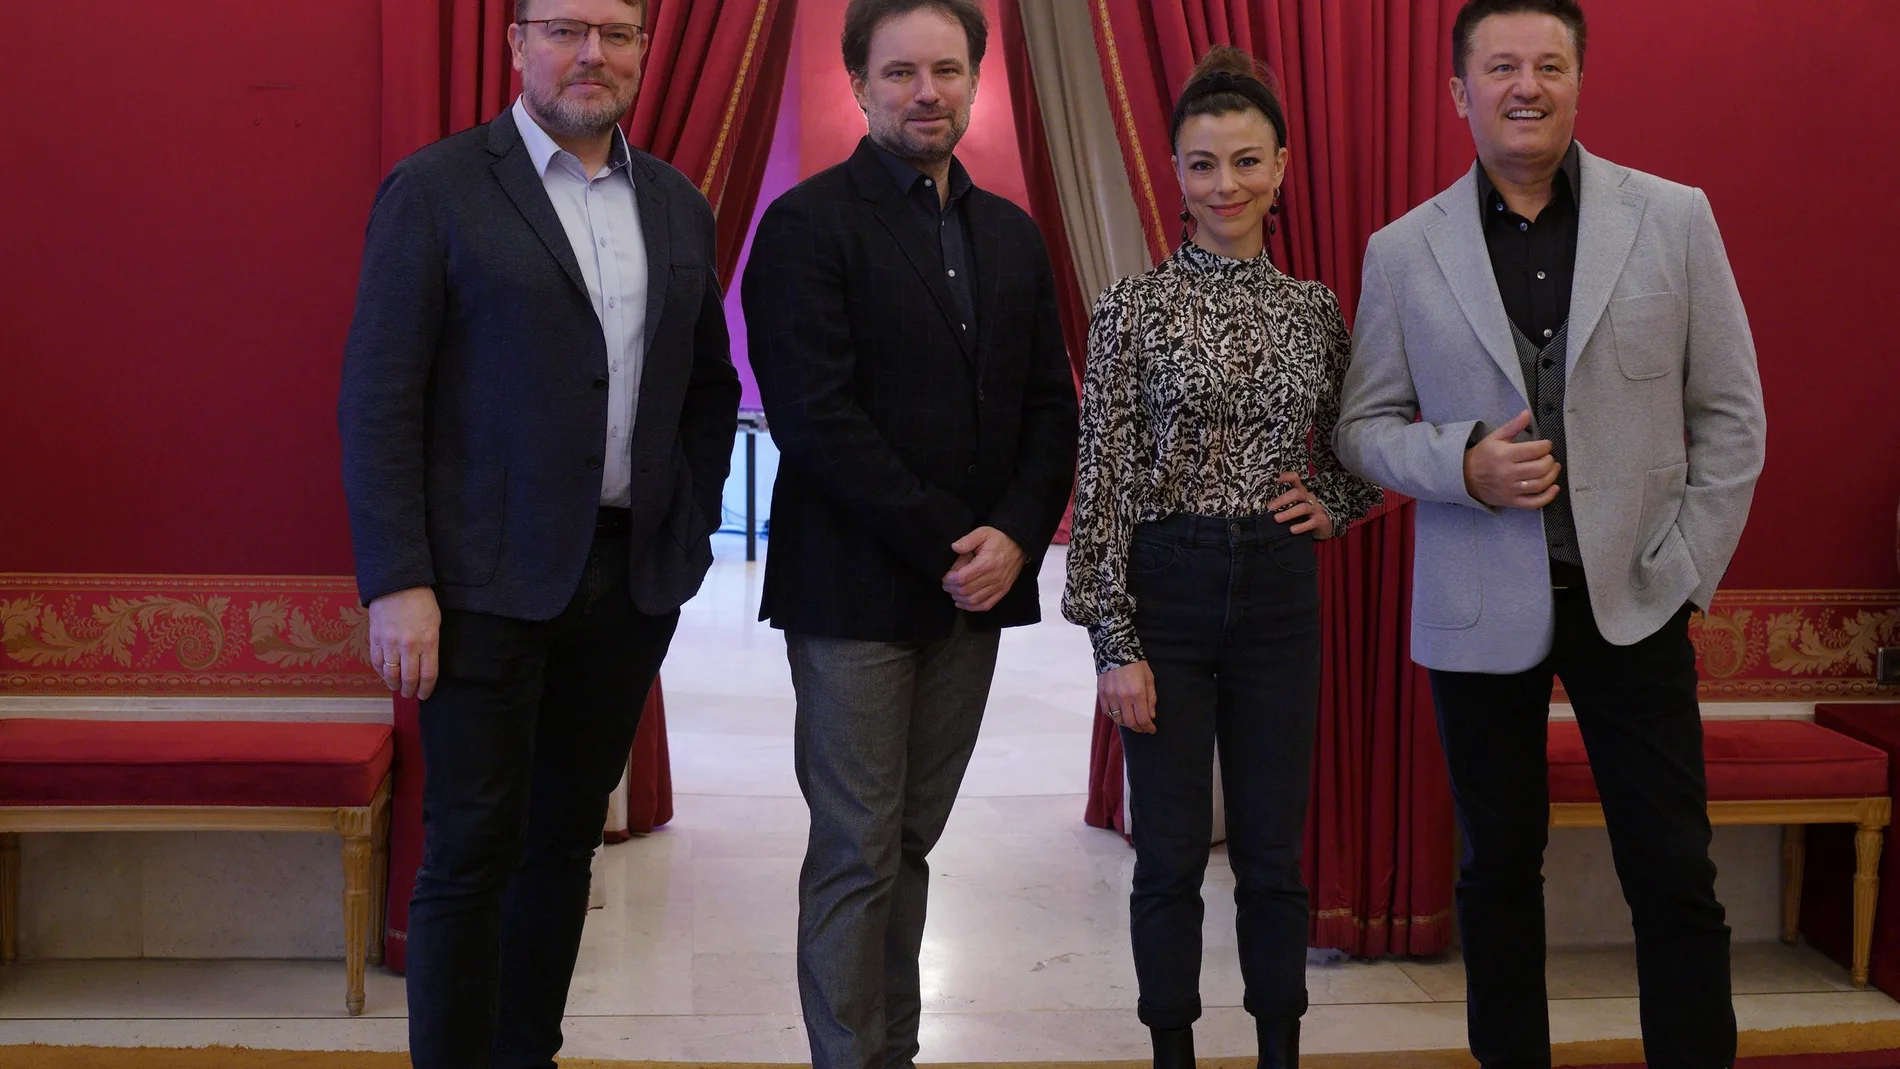 Tomasz Konieczny, (bajo barítono, Janusz); Łukasz Borowicz, director musical; Corinne Winters (soprano, Halka); Piotr Beczała (tenor, Jontek)